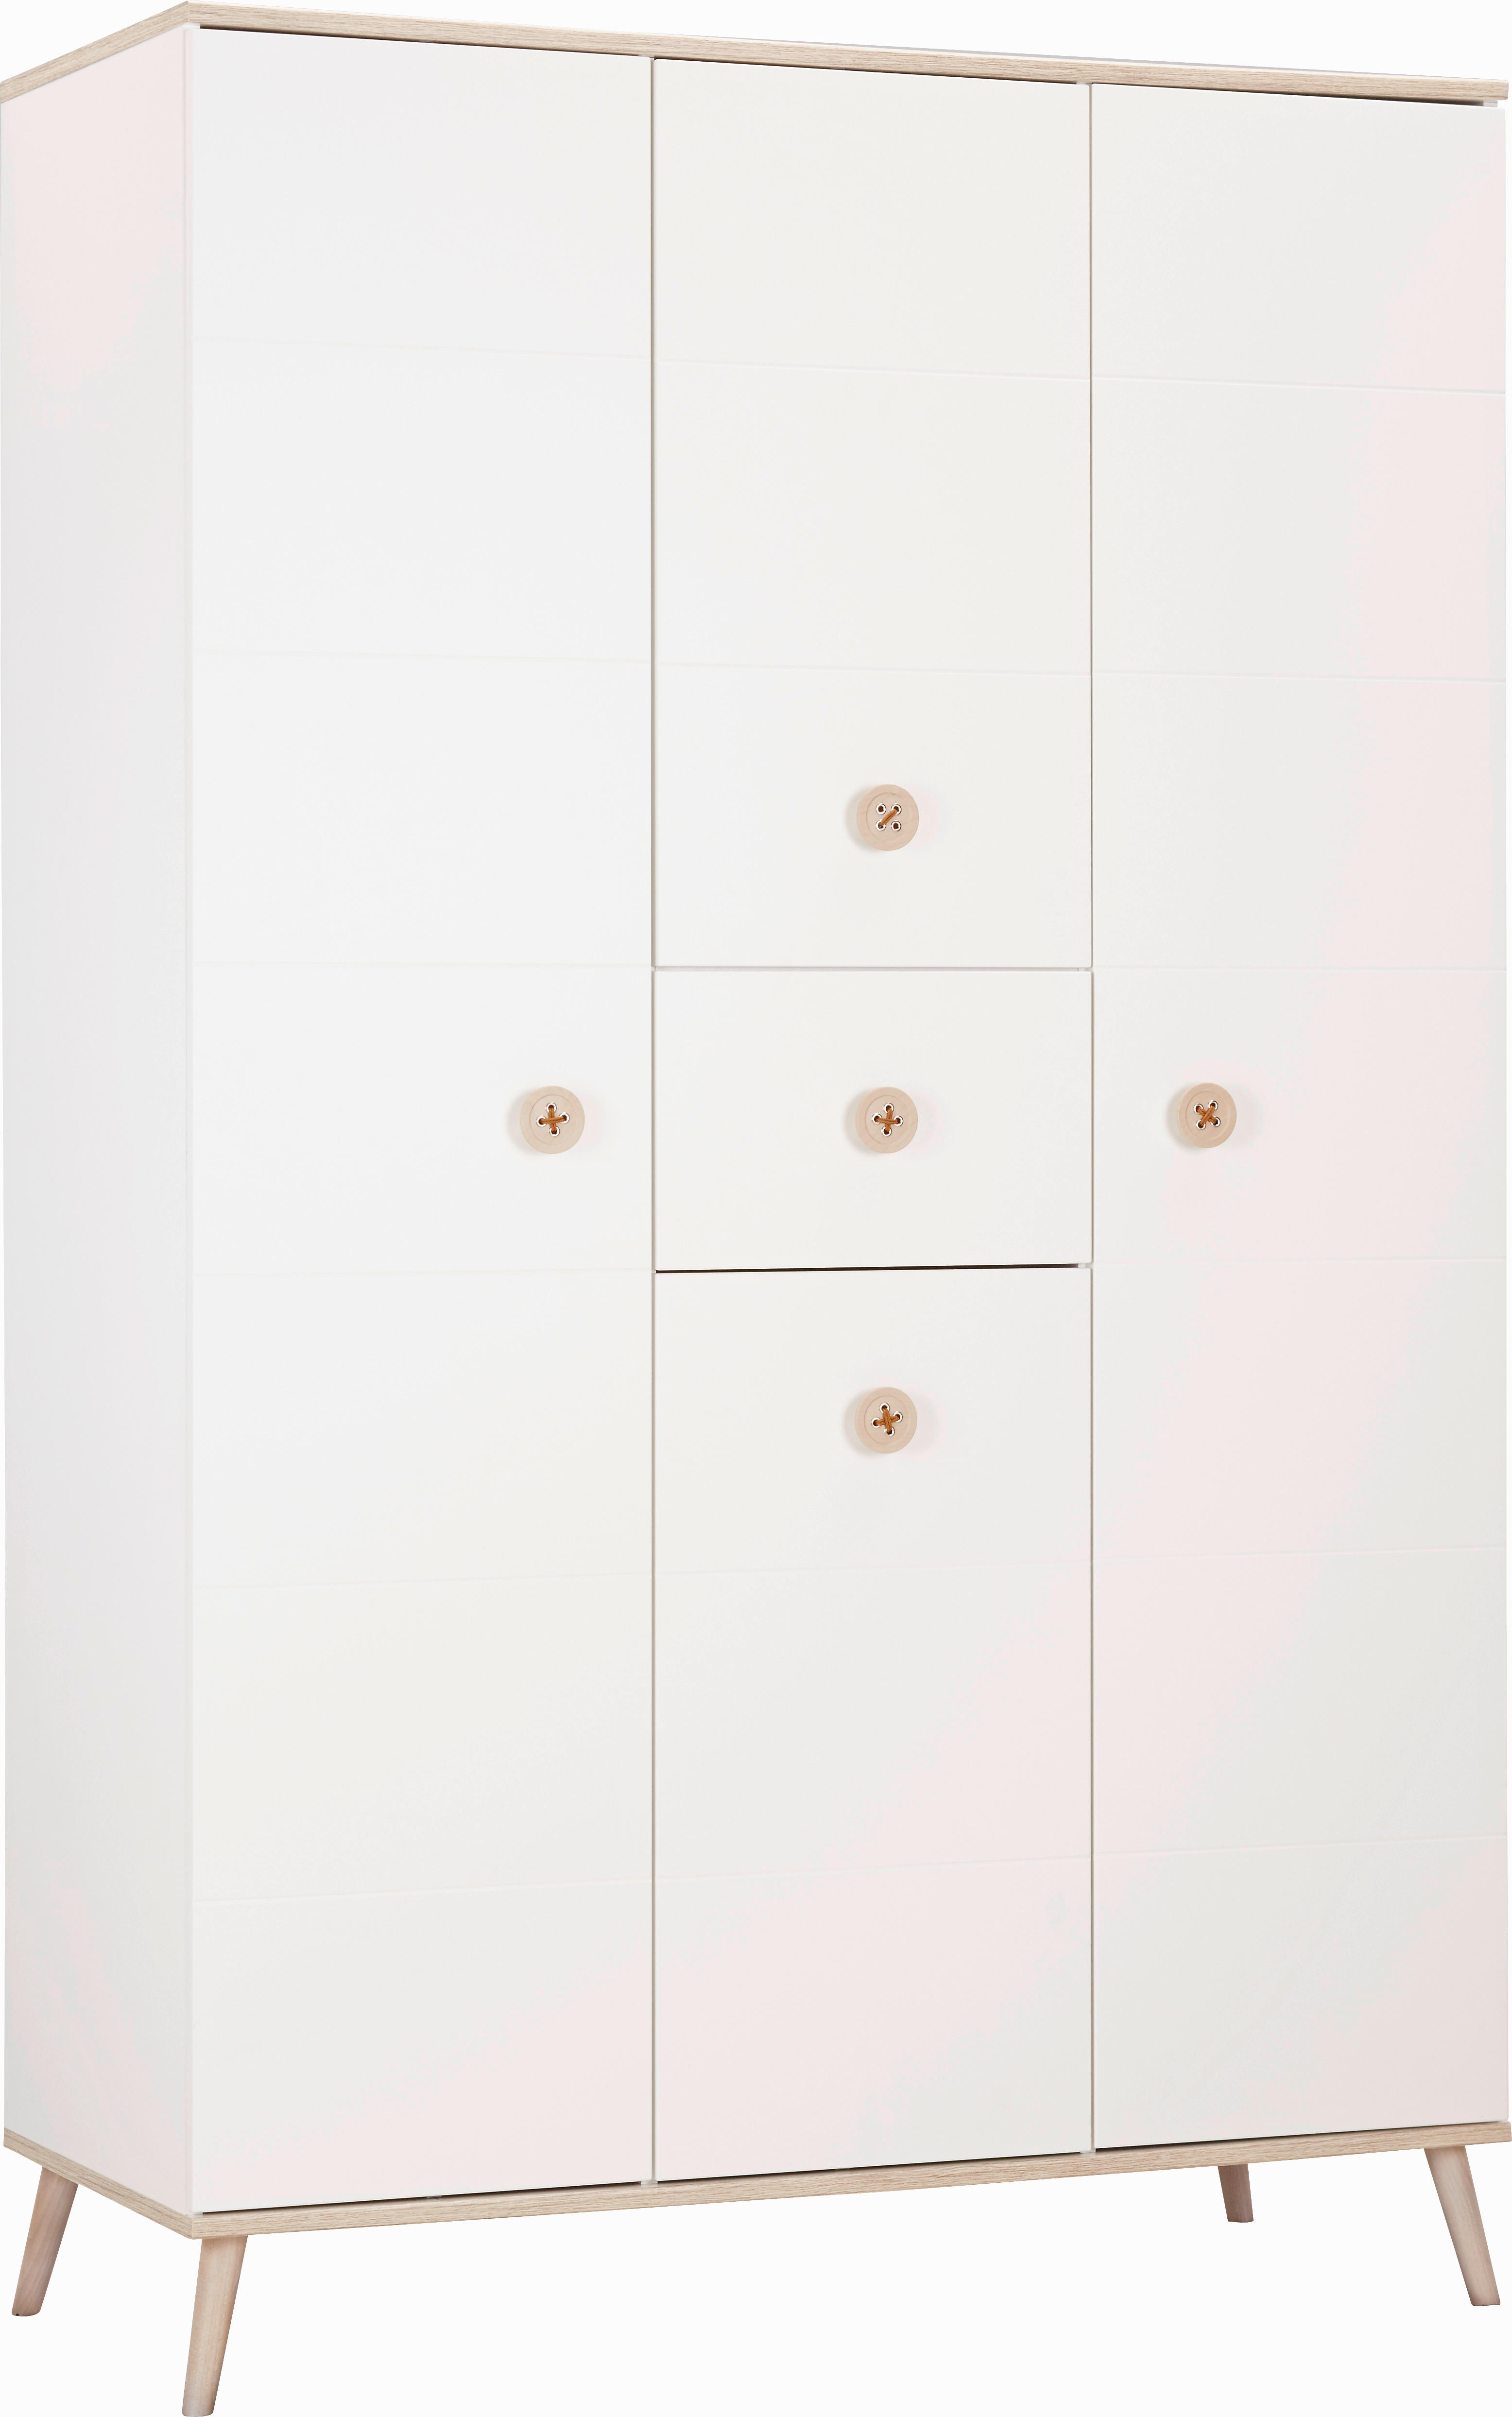 Modern Living ŠATNÍ SKŘÍŇ, bílá, barvy dubu, 125/202/55 cm - bílá,barvy dubu - dřevo, kompozitní dře